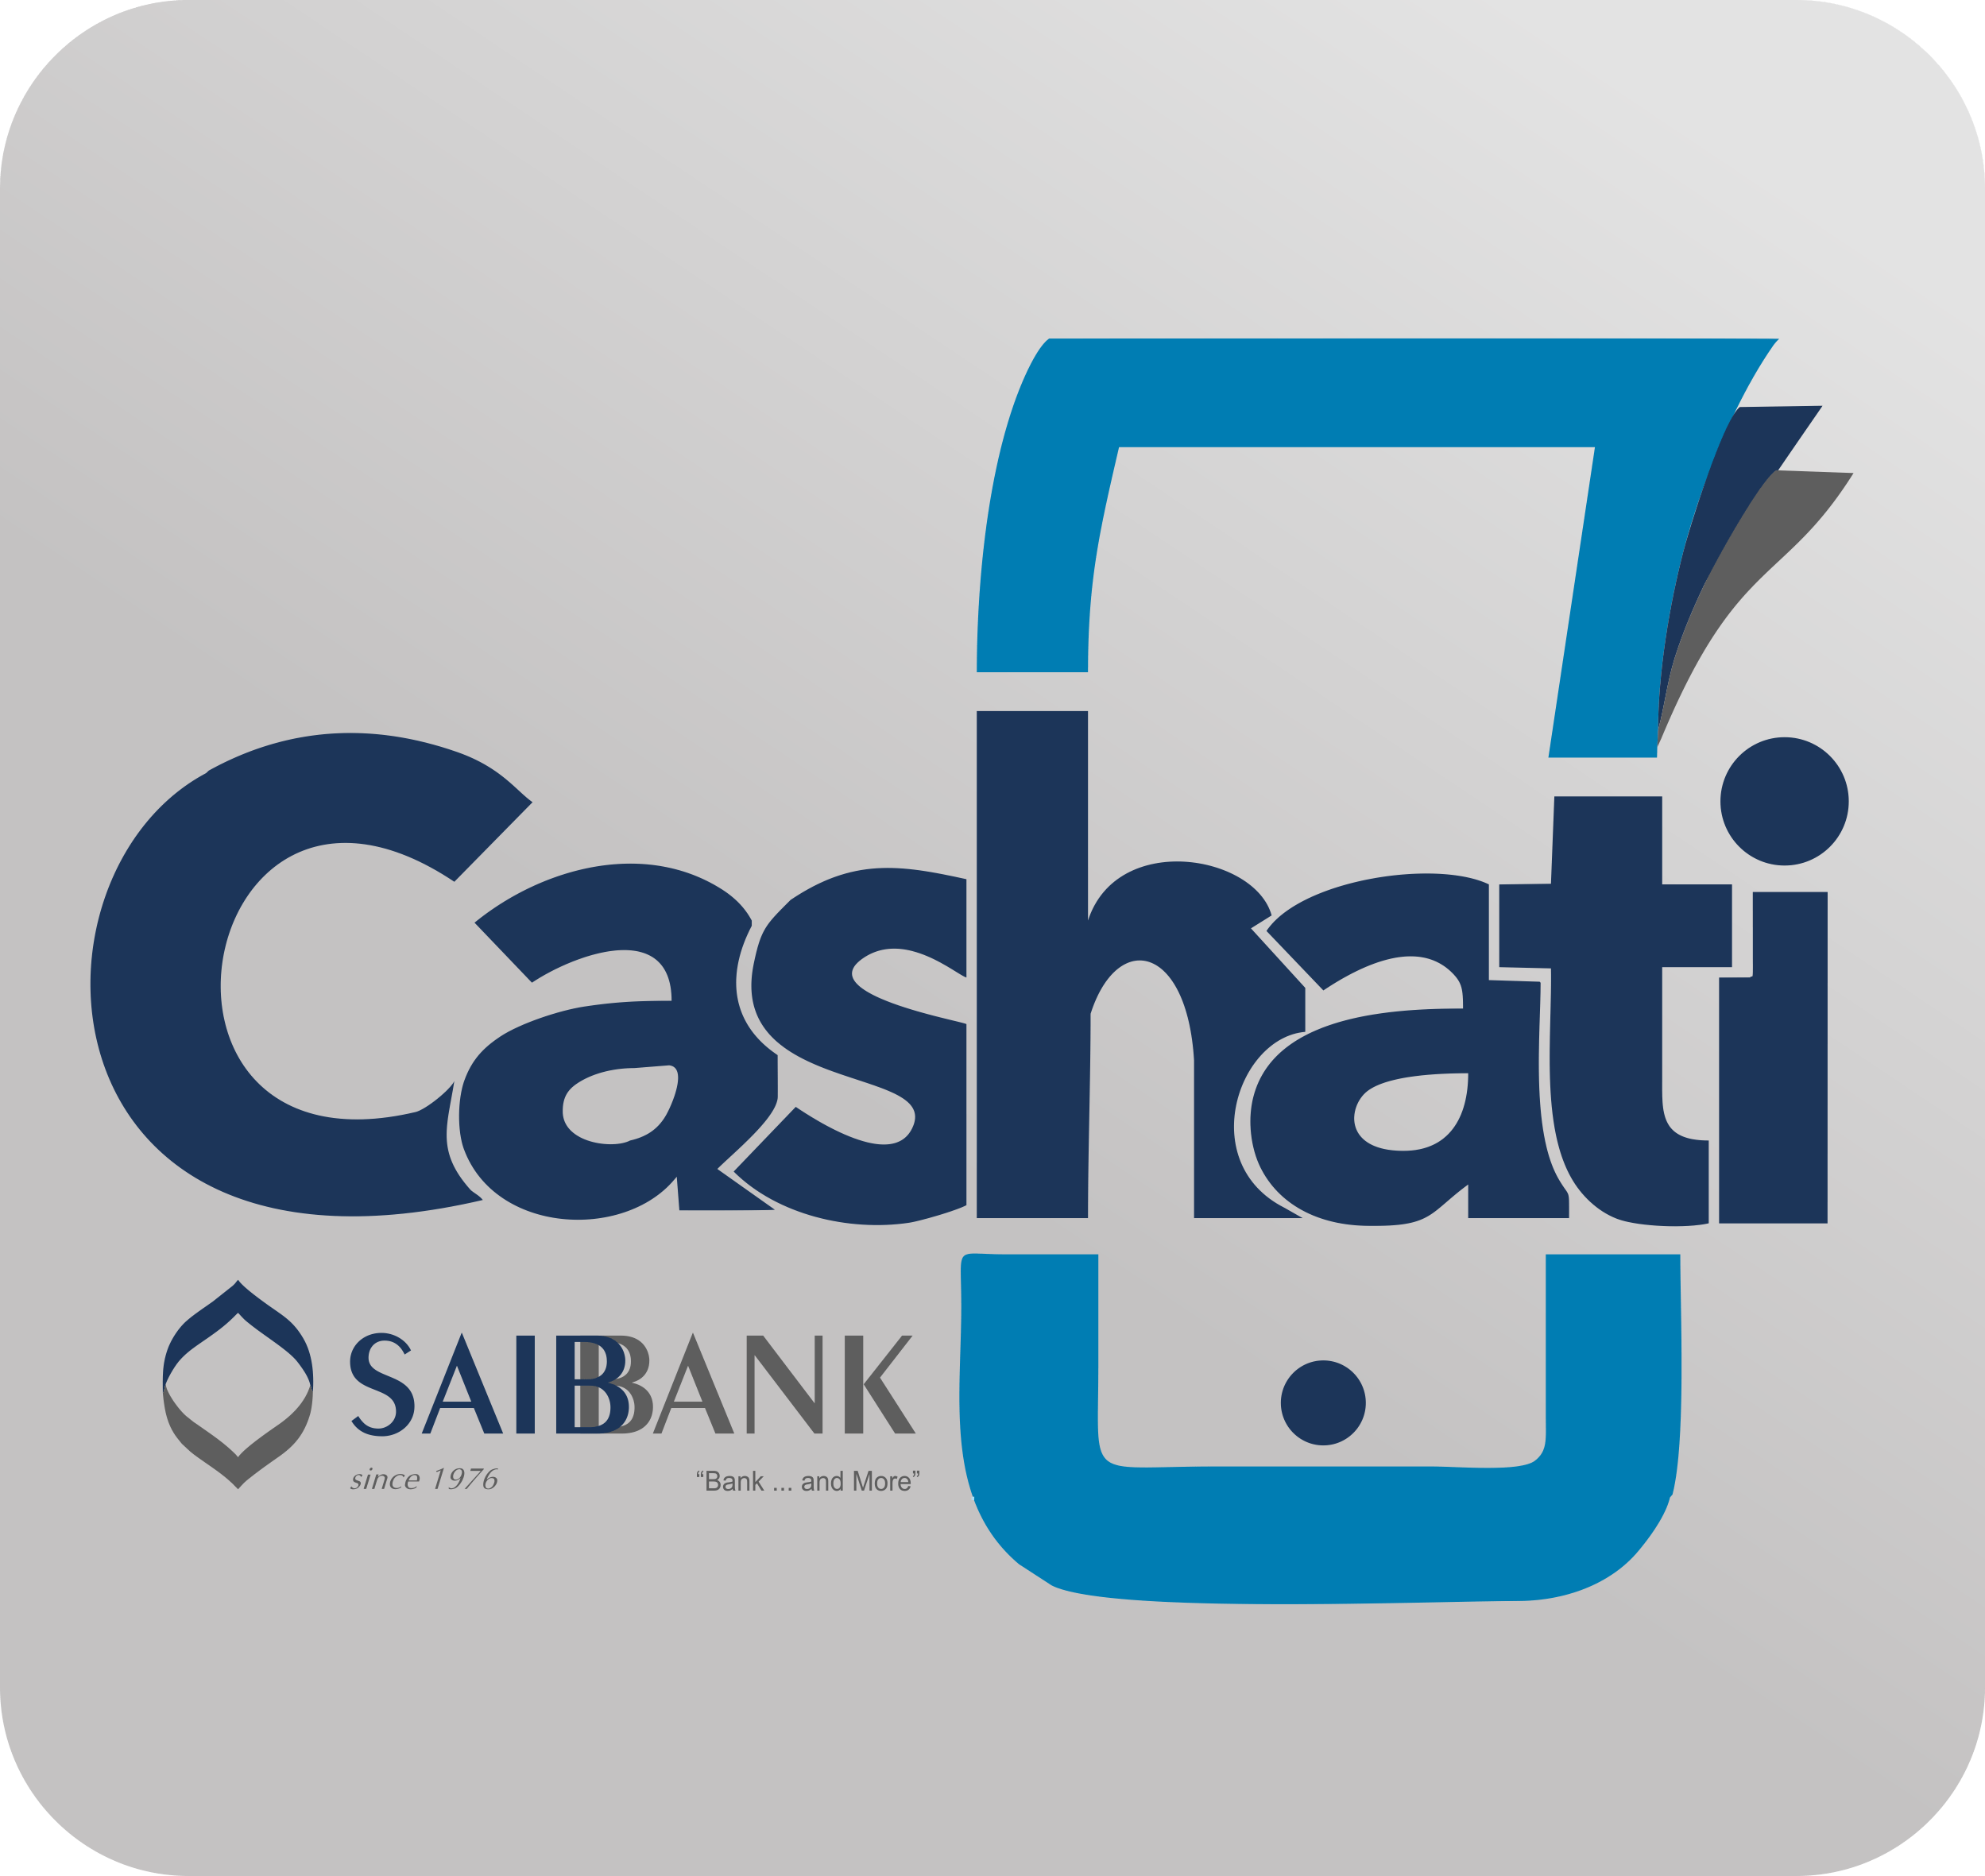 Mobile Wallet Logo - Cashati - SAIB Bank